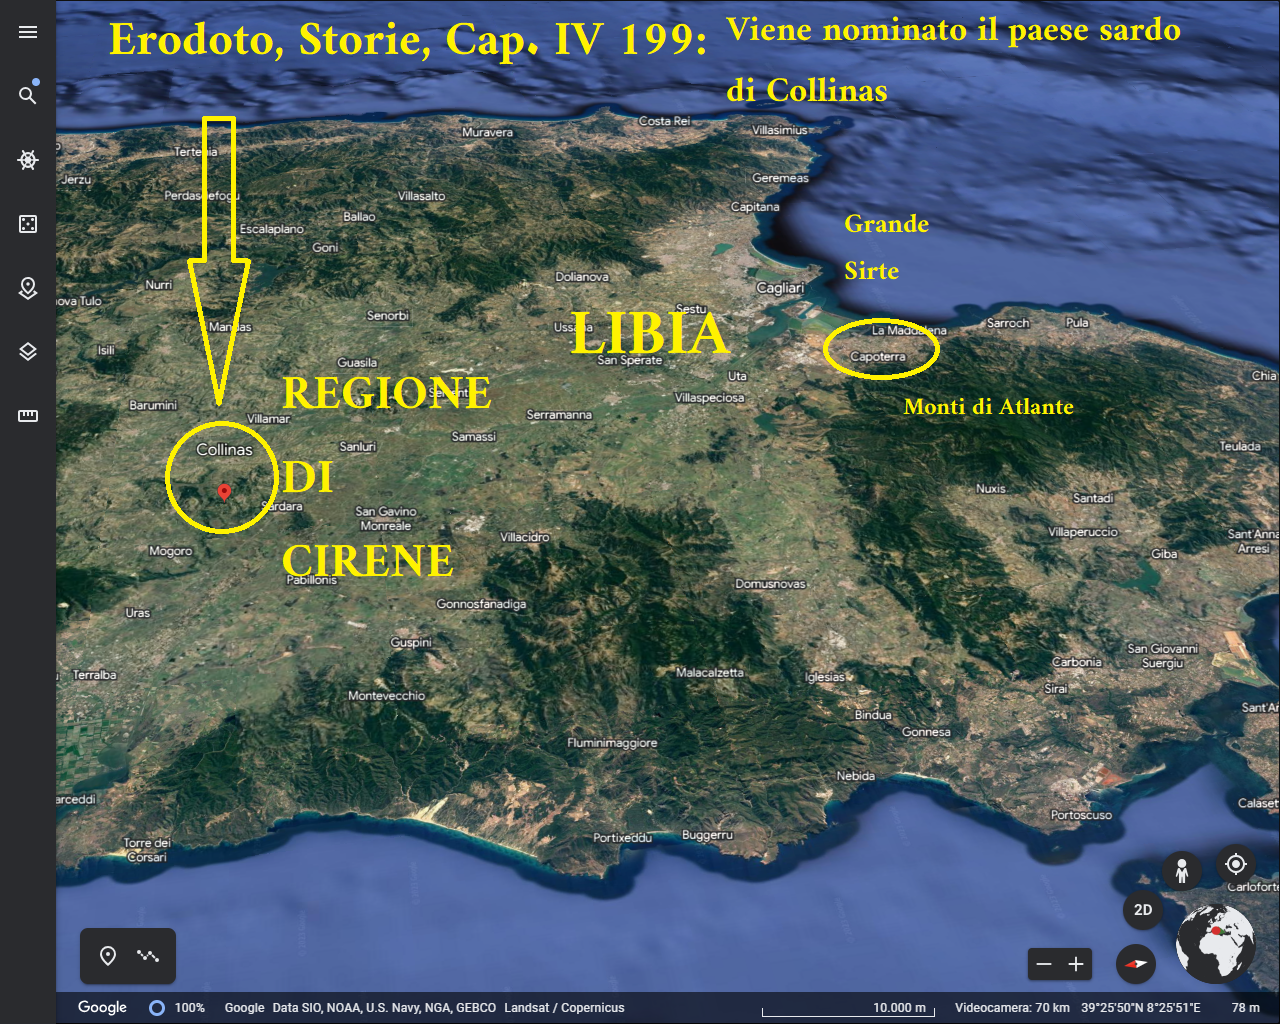 Erodoto parla della Sardegna nelle Storie al Capitolo IV e nomina il paese sardo di Collinas